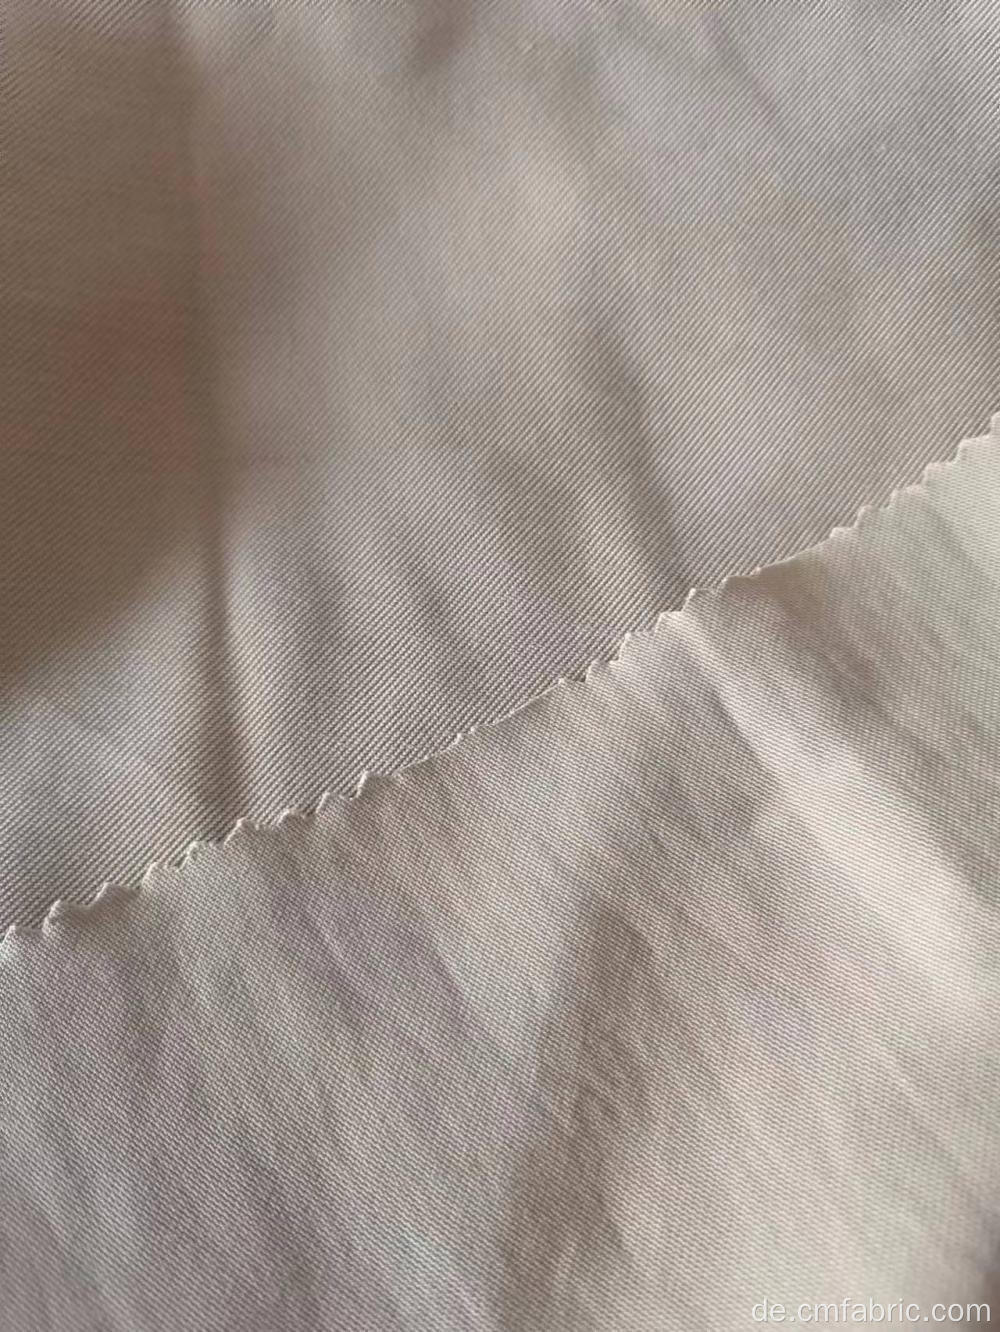 Gewebter Rayon Polyester Twill sandgewaschener Tencel -ähnlicher Stoff